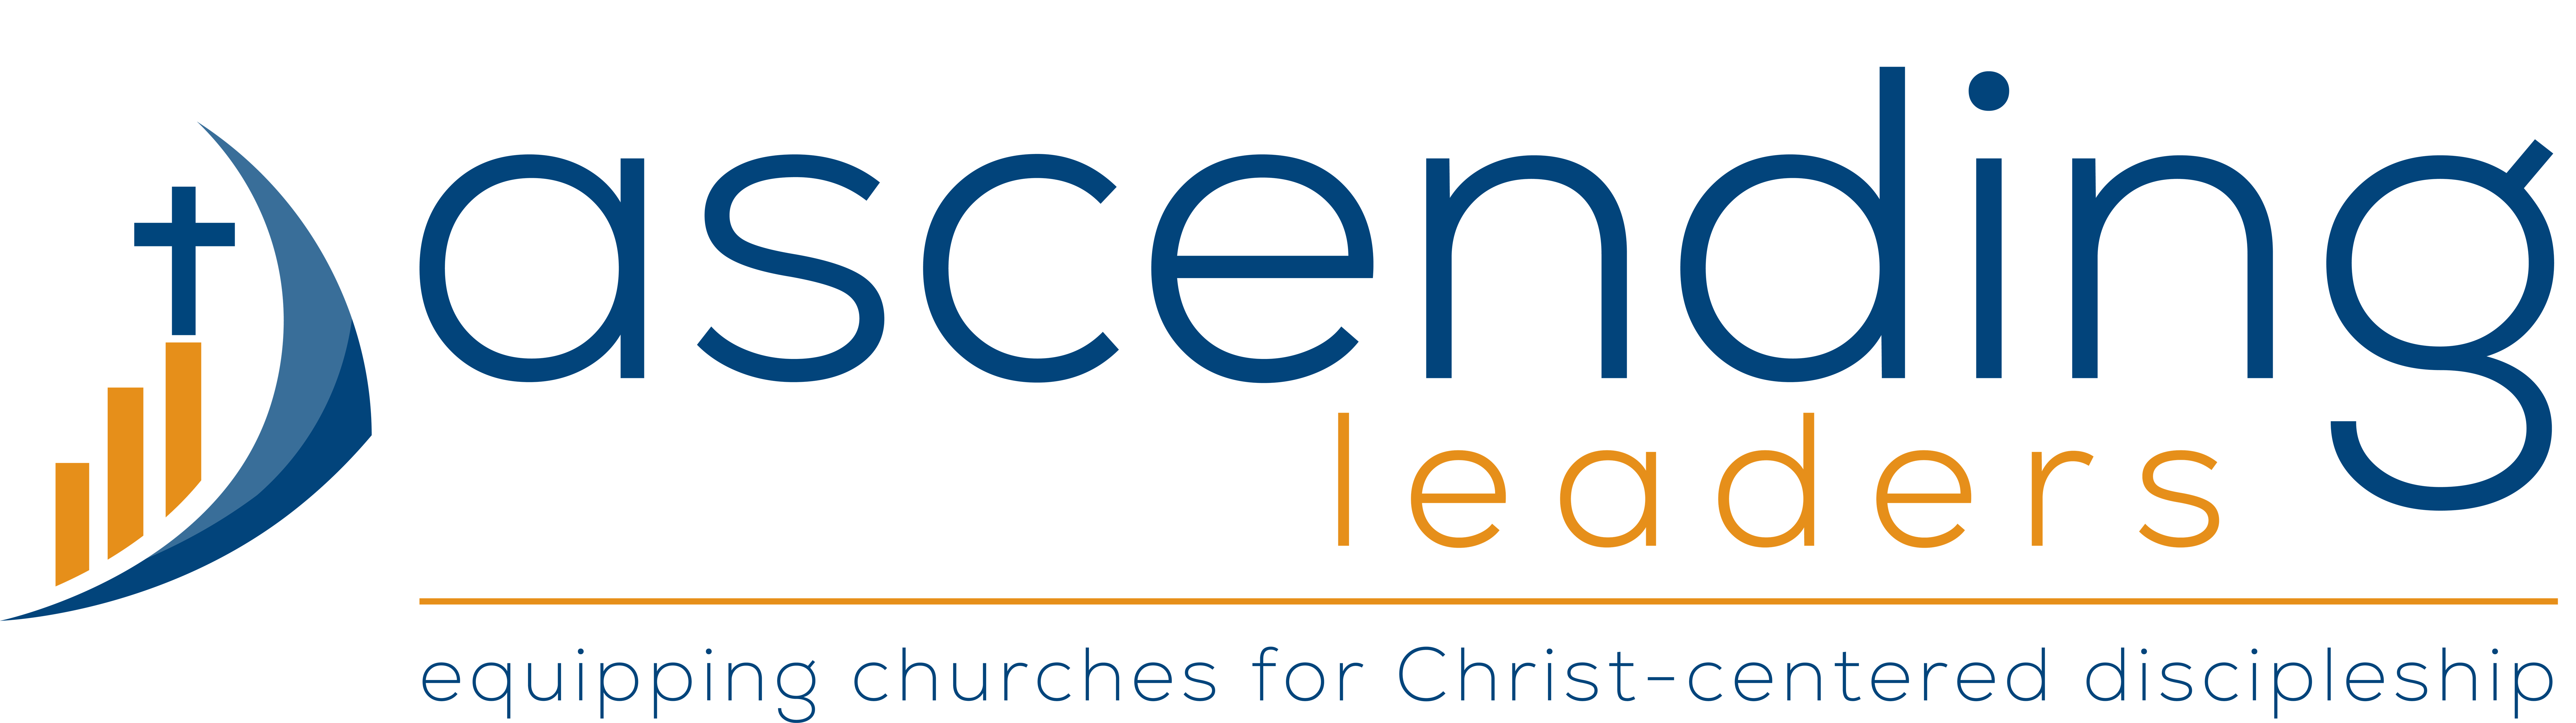 Ascending Leaders logo